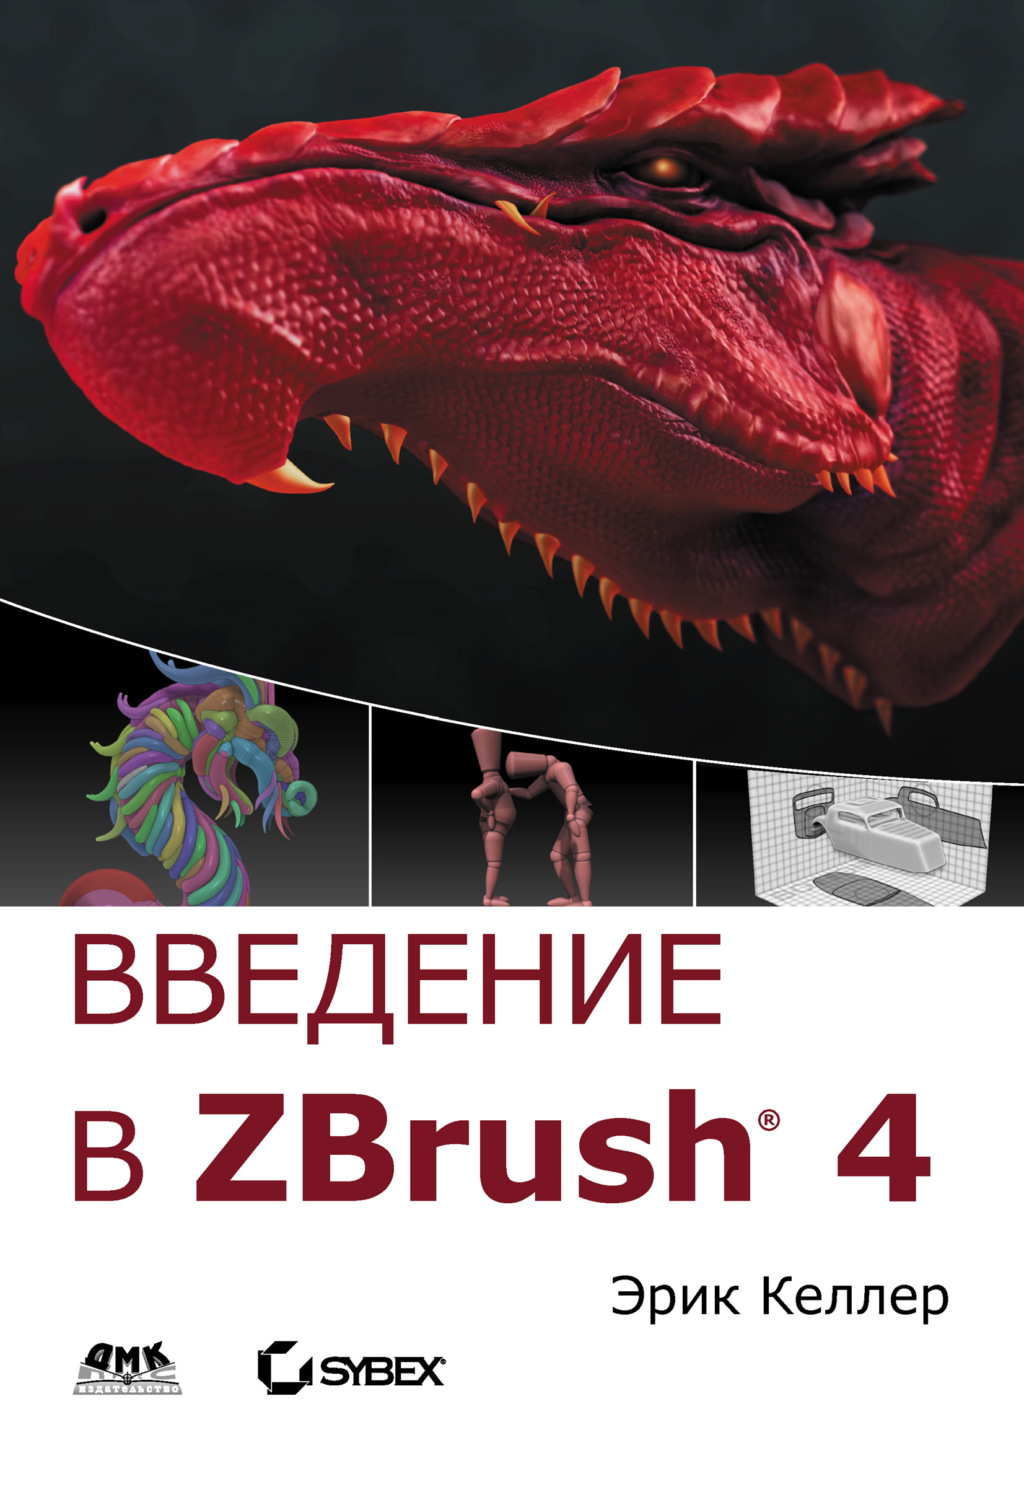 zbrush 4 books pdf